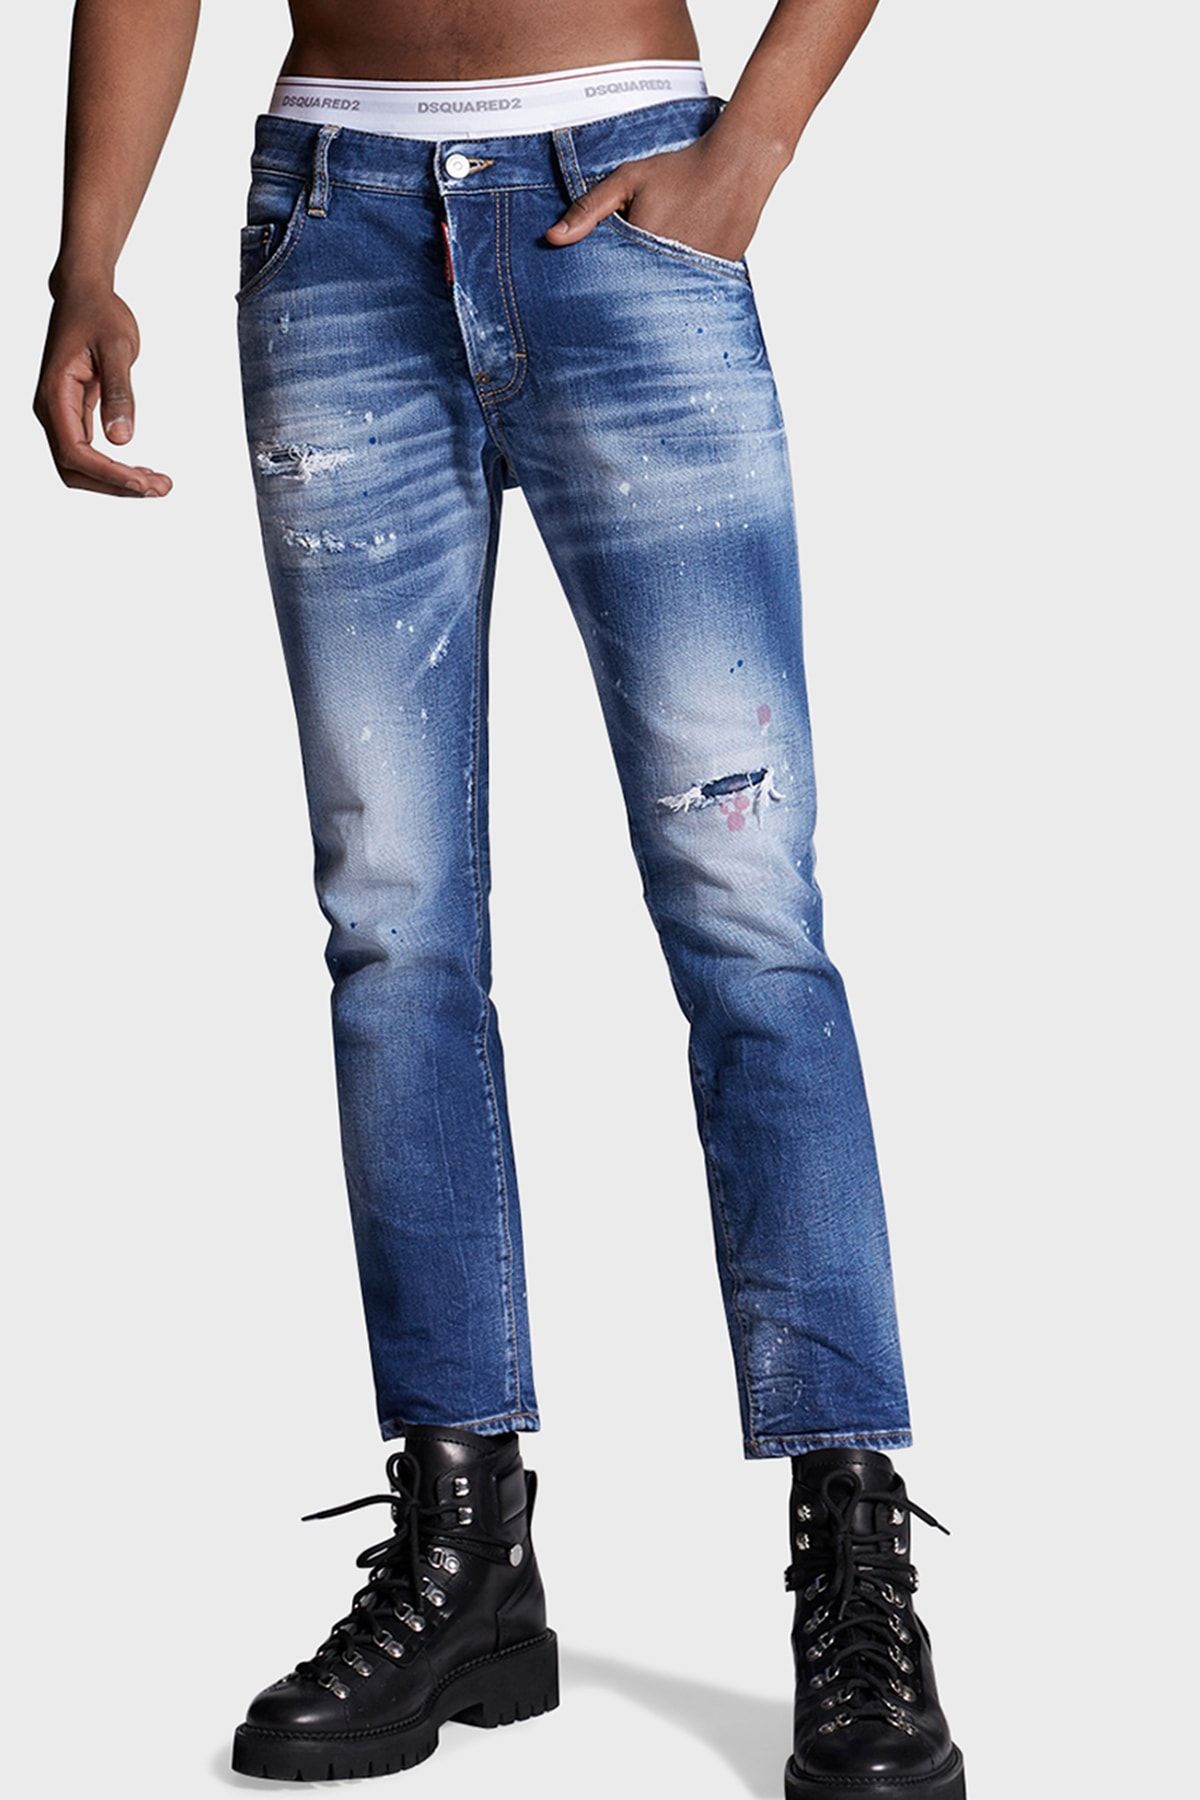 Dsquared 2 Slim Fit Pamuklu Jeans Erkek Kot Pantolon S74lb0969 S30663 470